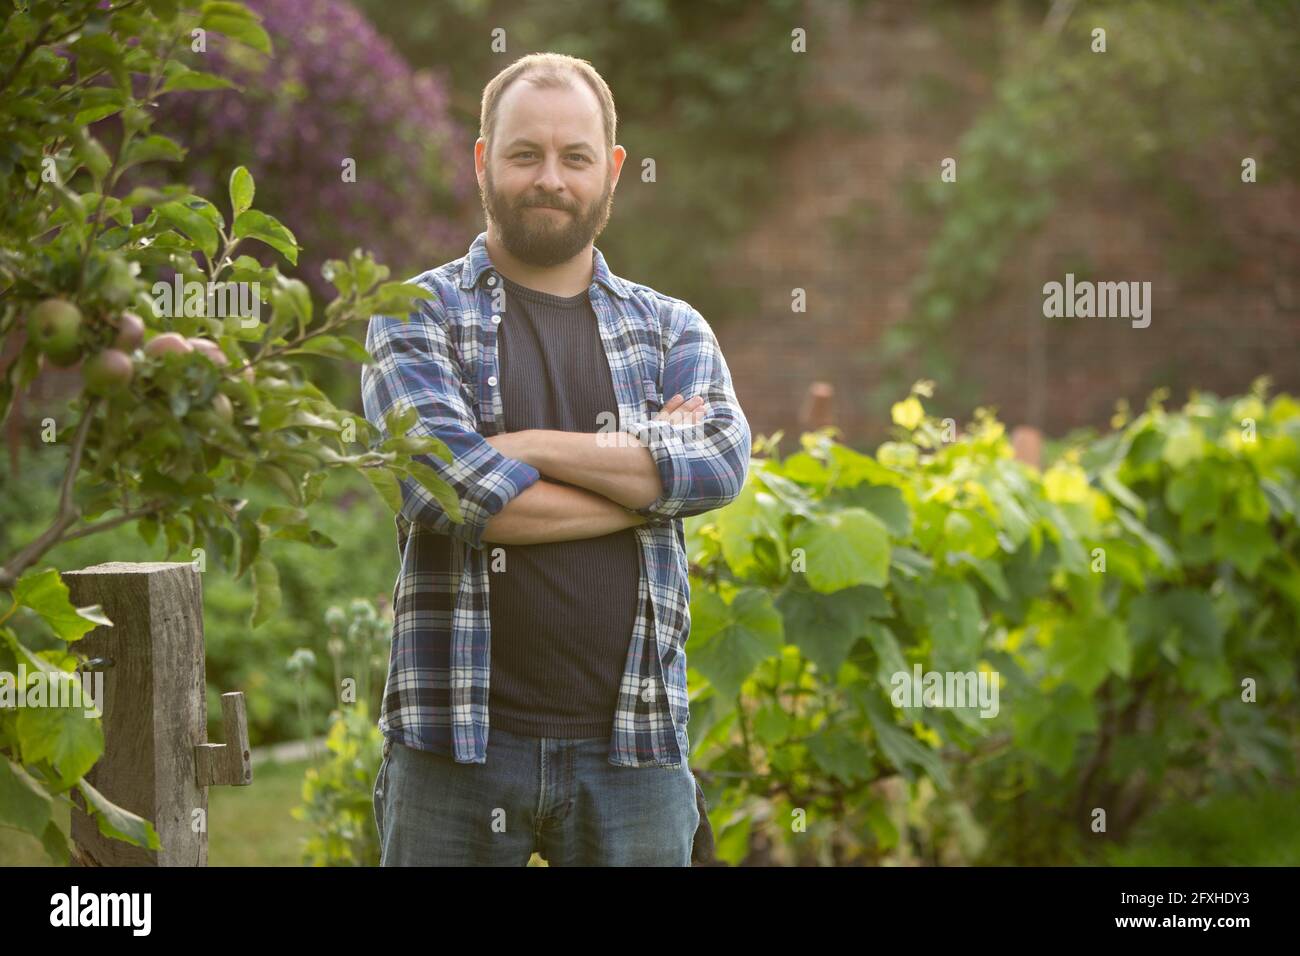 Portrait confiant homme beau avec barbe dans le jardin Banque D'Images